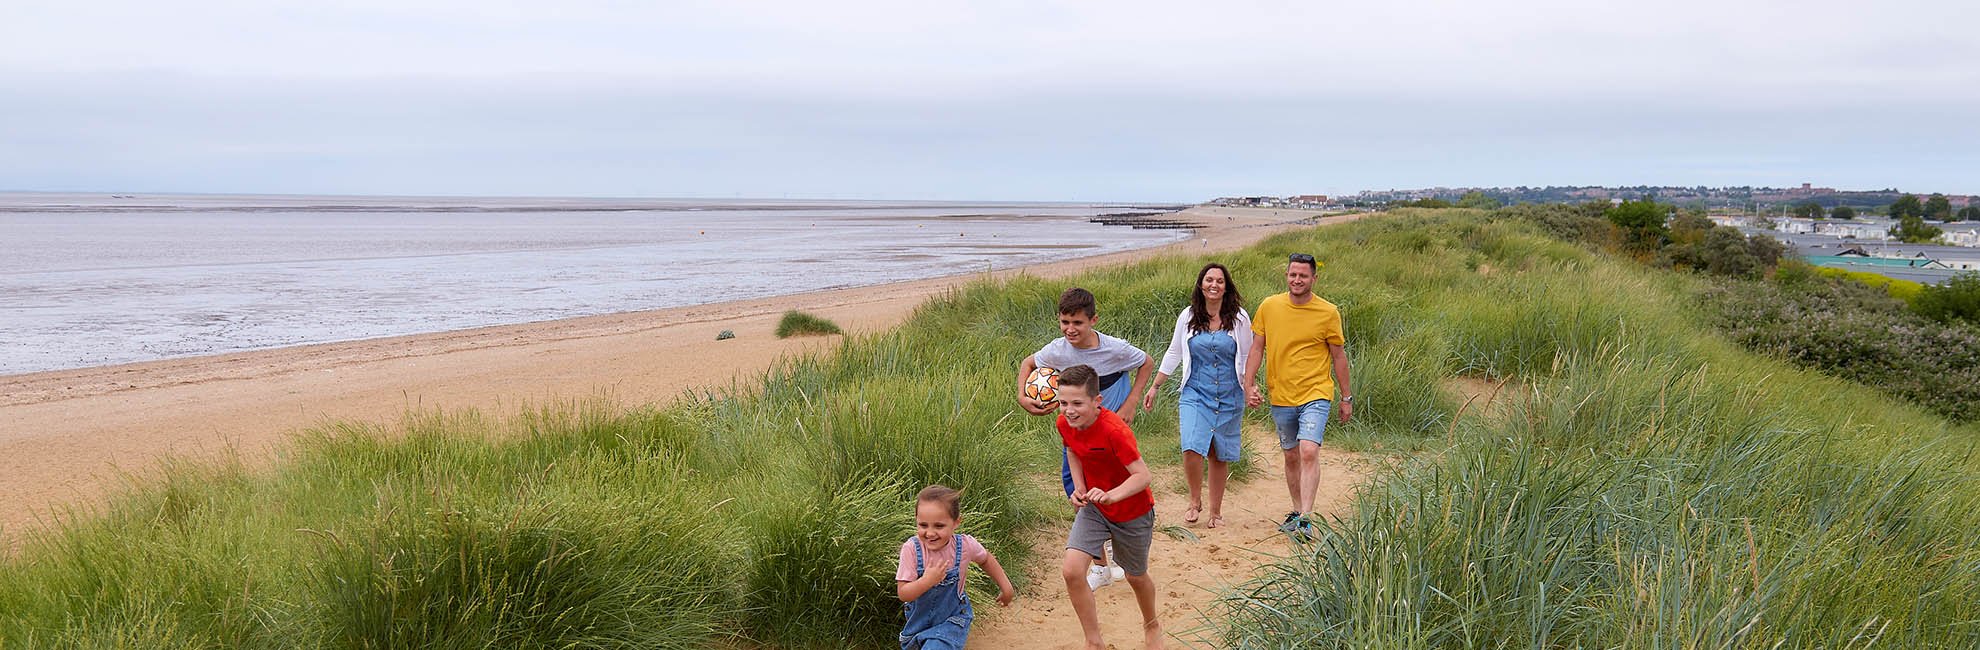 A family running through the sand dunes at Heacham Beach